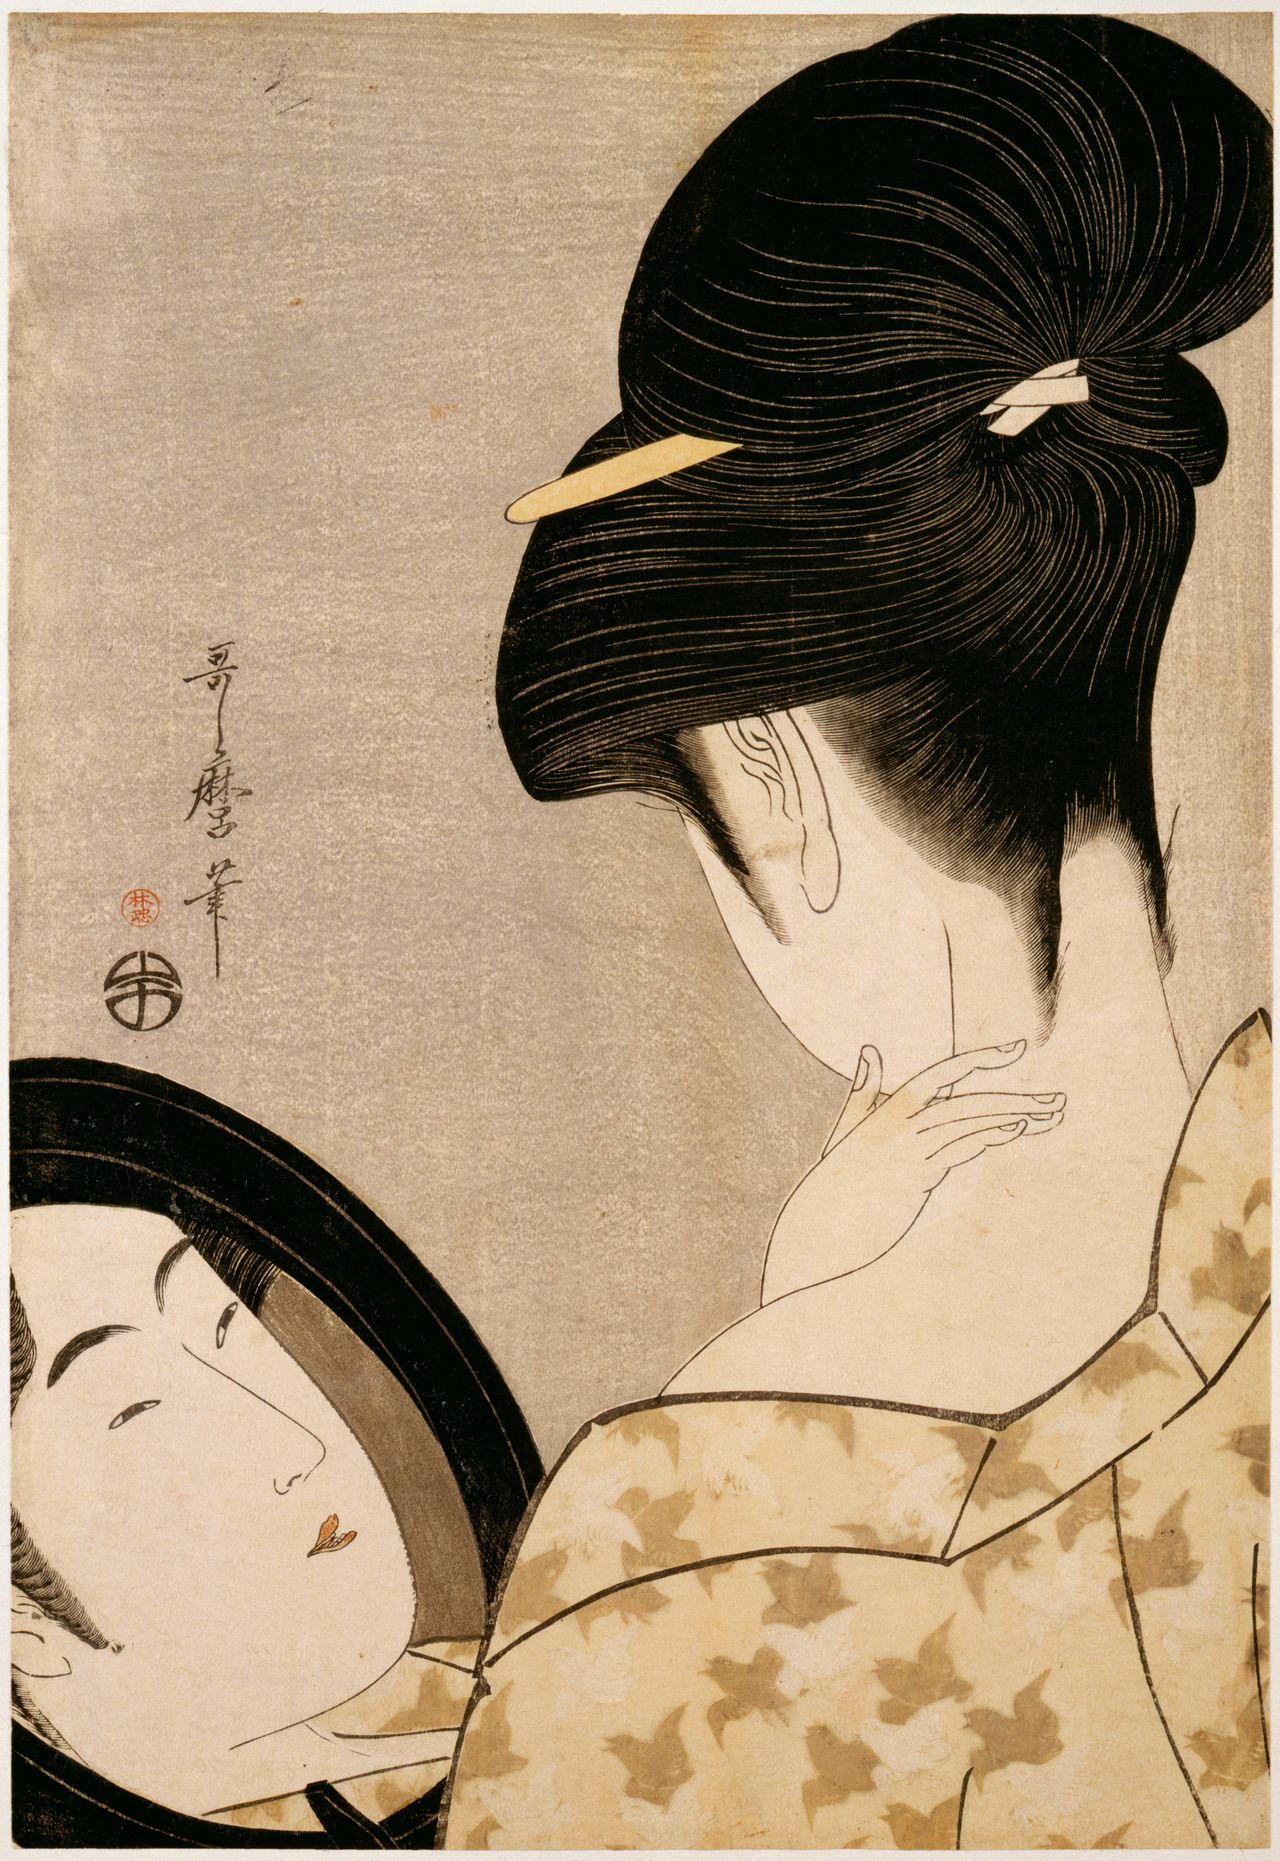 Kitagawa Utamaro, "Woman powdering her neck," 1795-1796